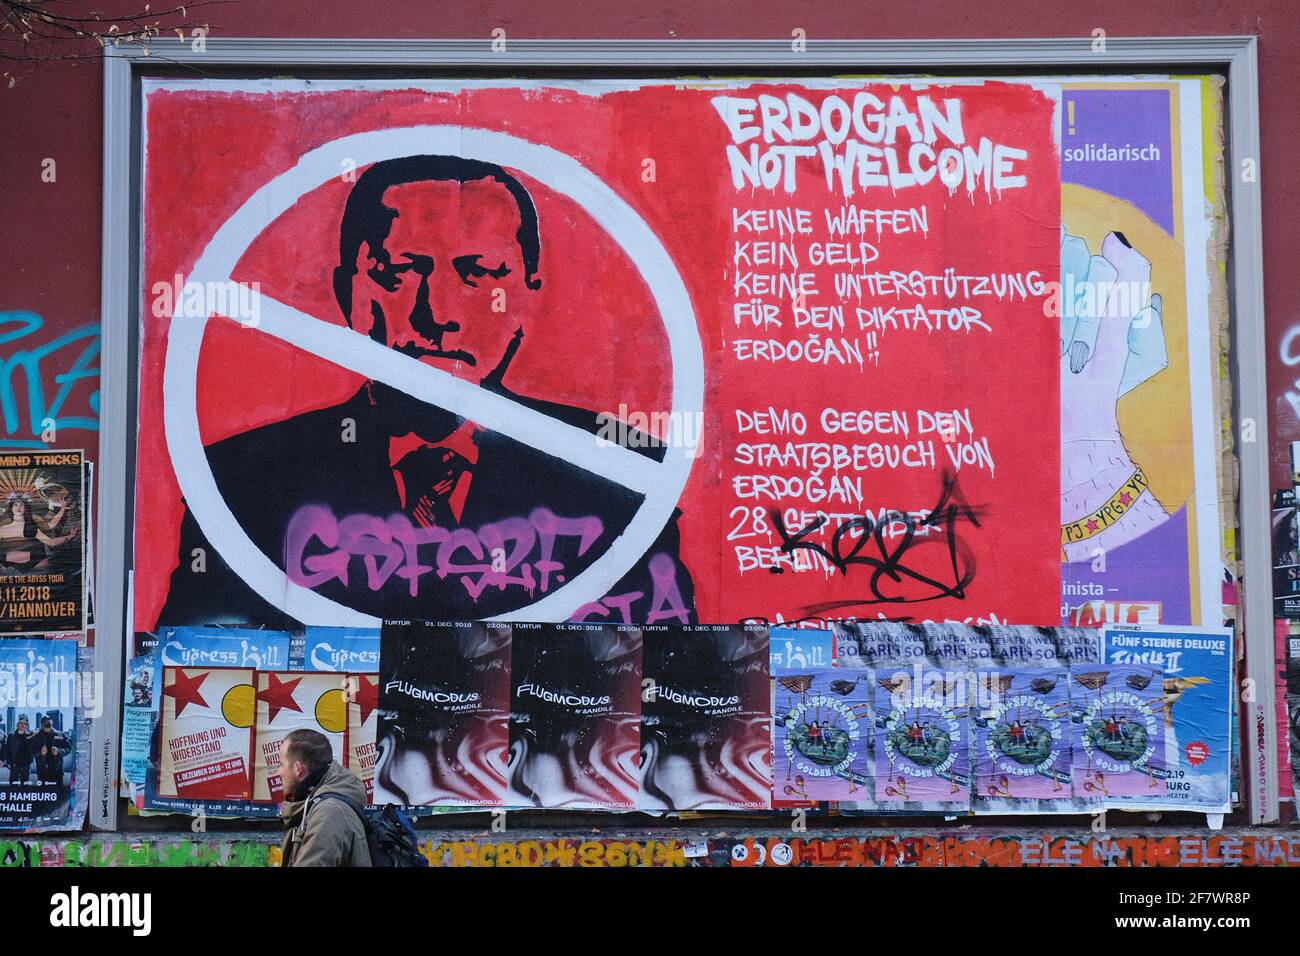 26.11.2018, Hamburg, Deutschland - Erdogan not welcome, altes Plakat im Hamburger Schanzenviertel mit einem Aufruf zur Demonstration gegen den Staaats Stock Photo